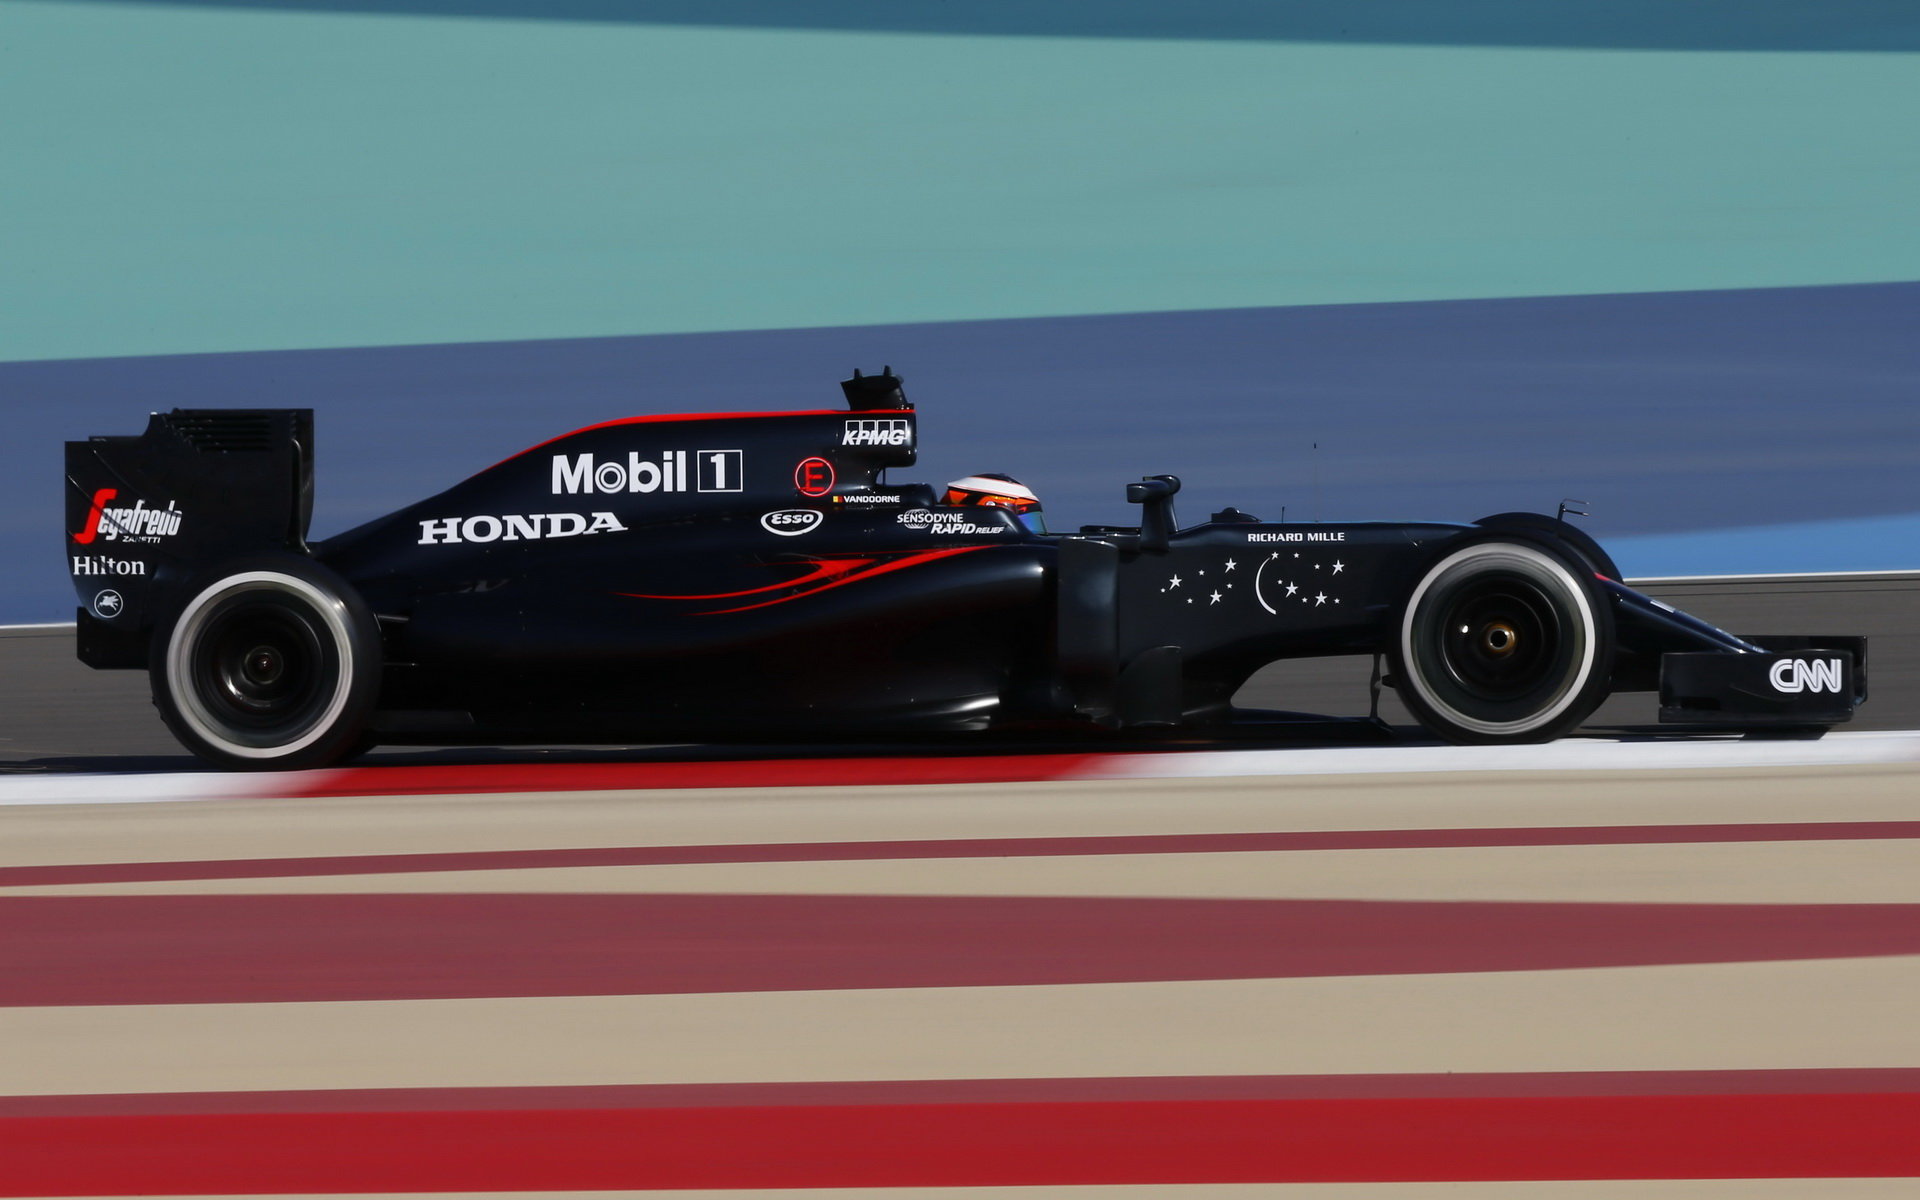 Vandoorneovi debut v Bahrajnu vyšel, dočká se příští rok závodní sedačky?